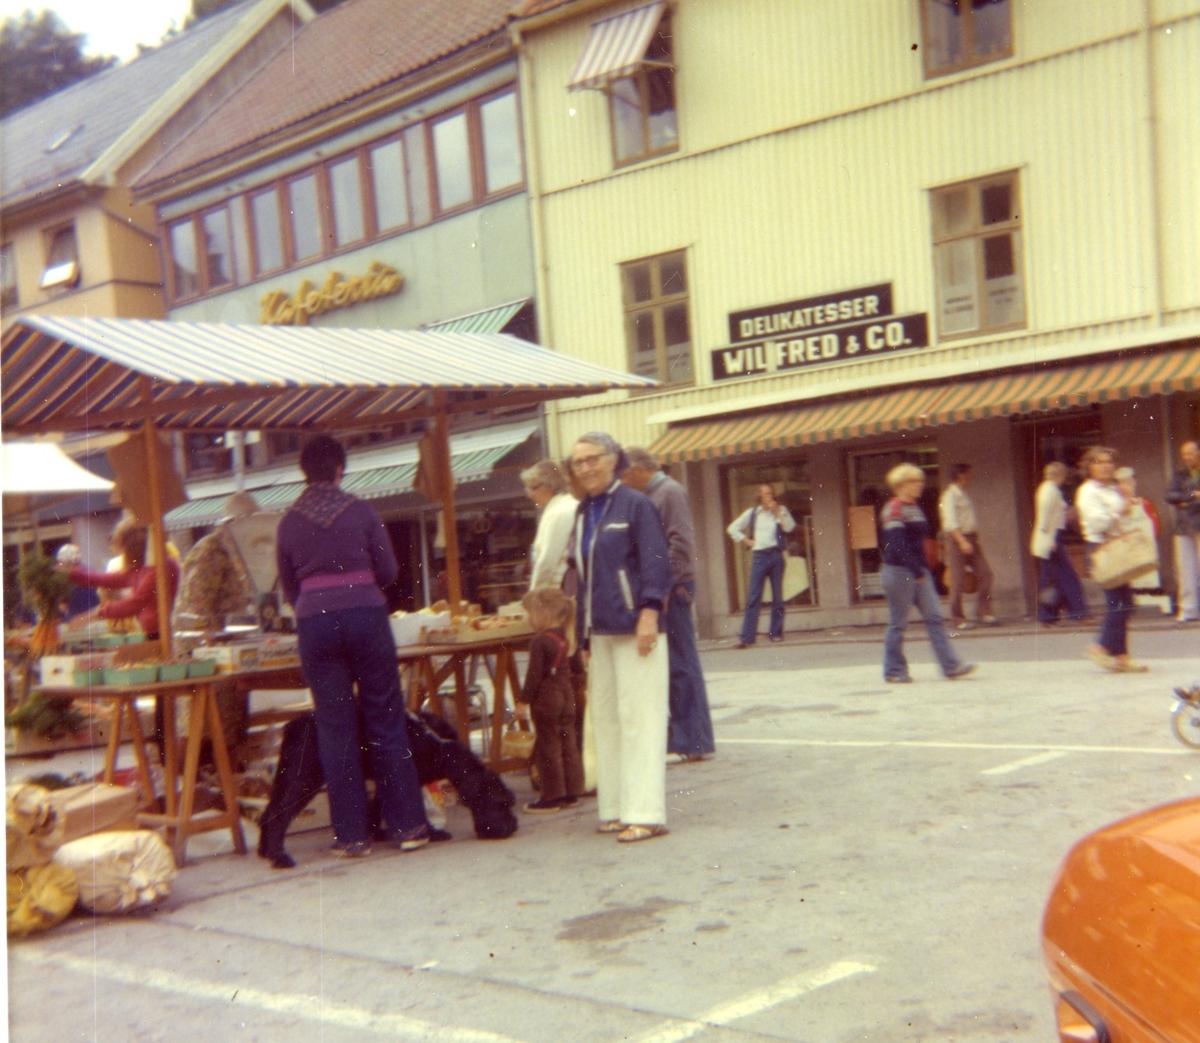 Torvhandel, Kragerø torv.  1970-80? Wilfred og Co, en fiskebutikk.